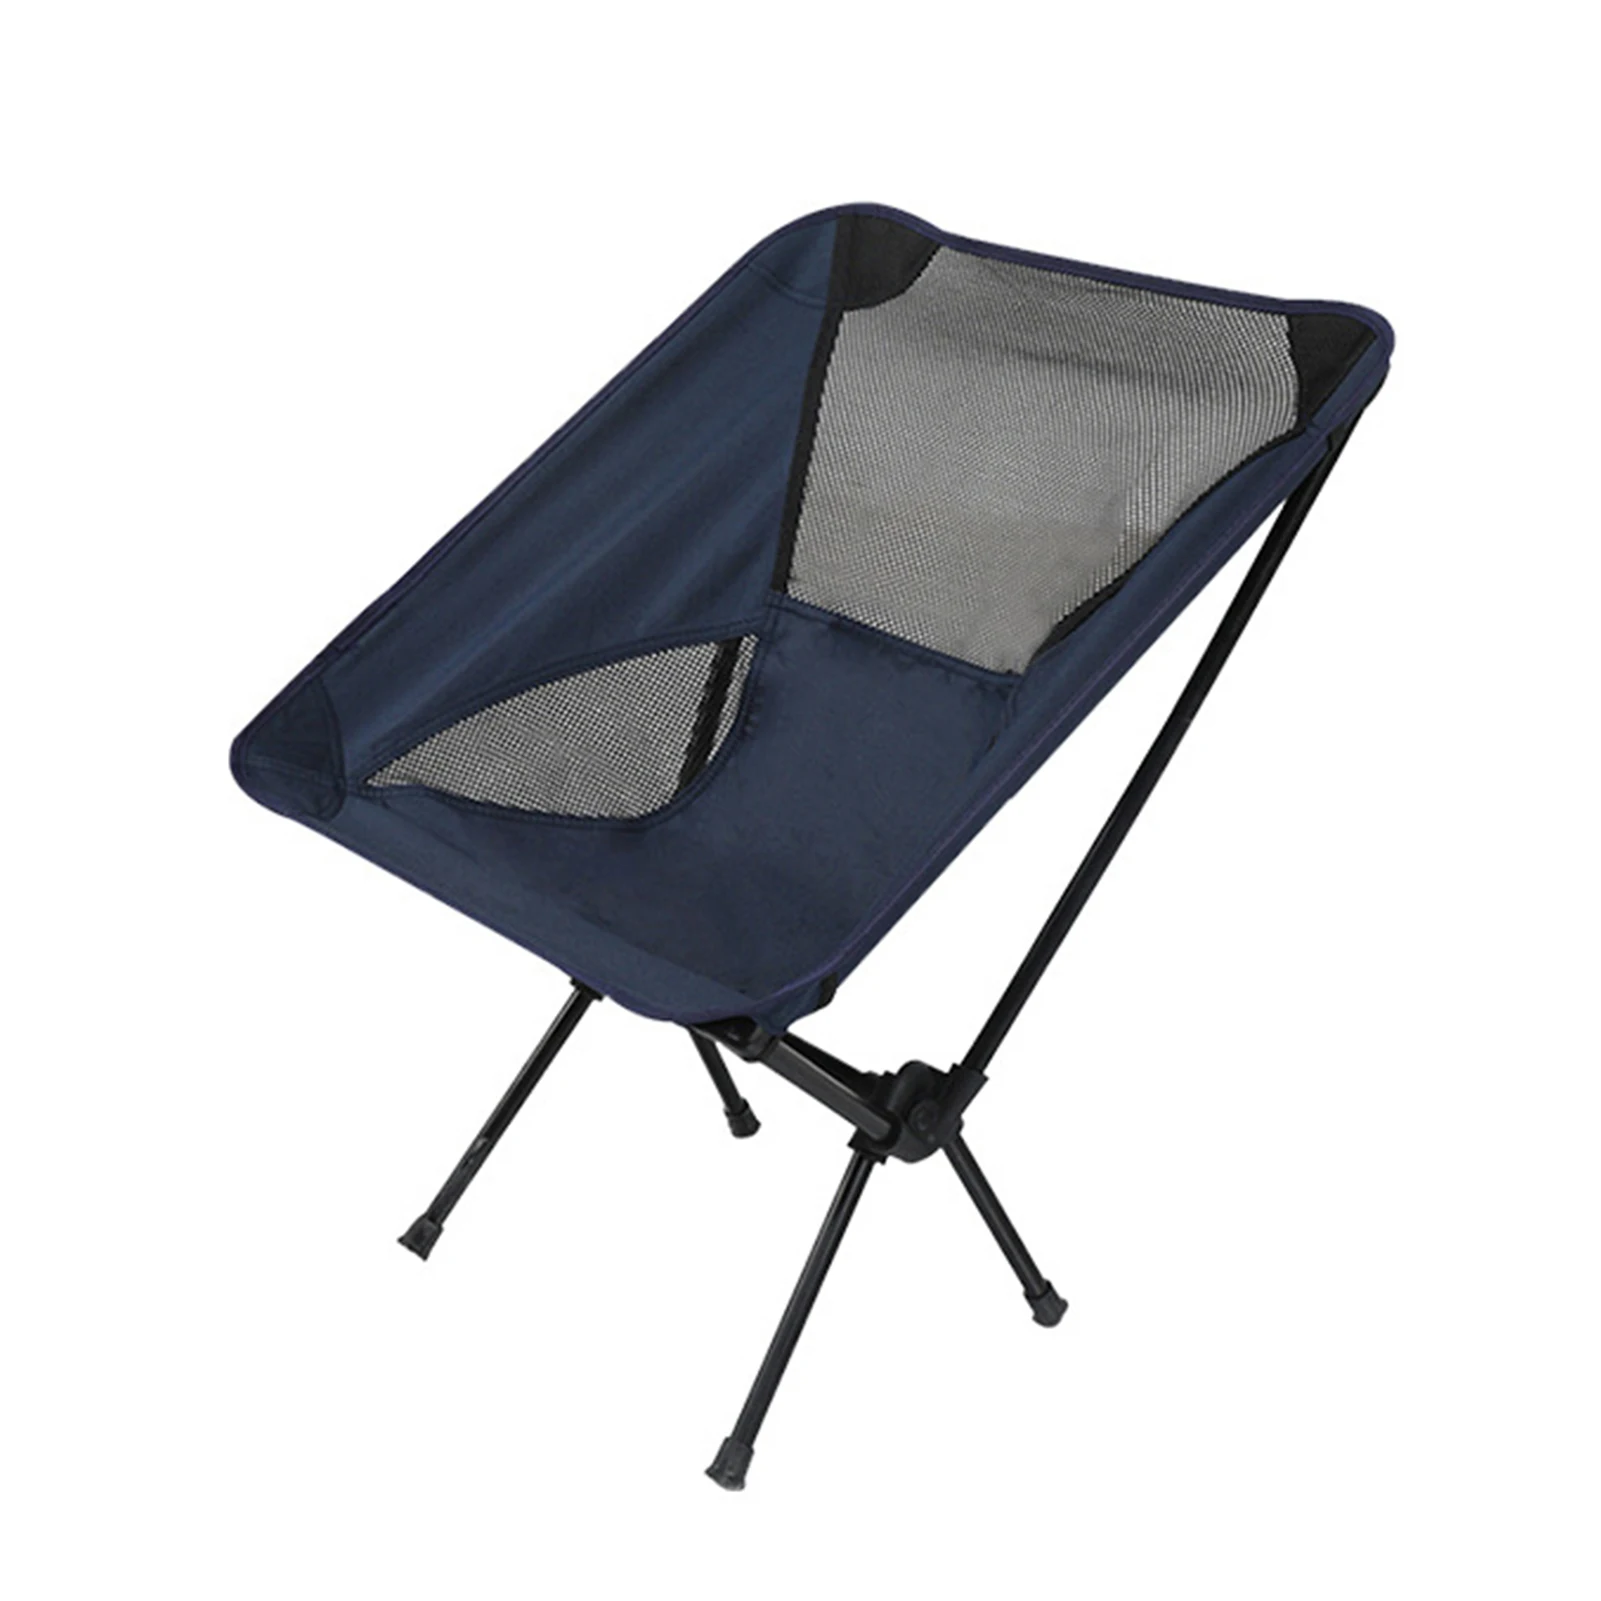 저렴한 여행 초경량 접이식 의자 야외 휴대용 캠핑 의자 낚시 바베큐 비치 베어링 130KG 및 T8, 스토리지 가방 포함